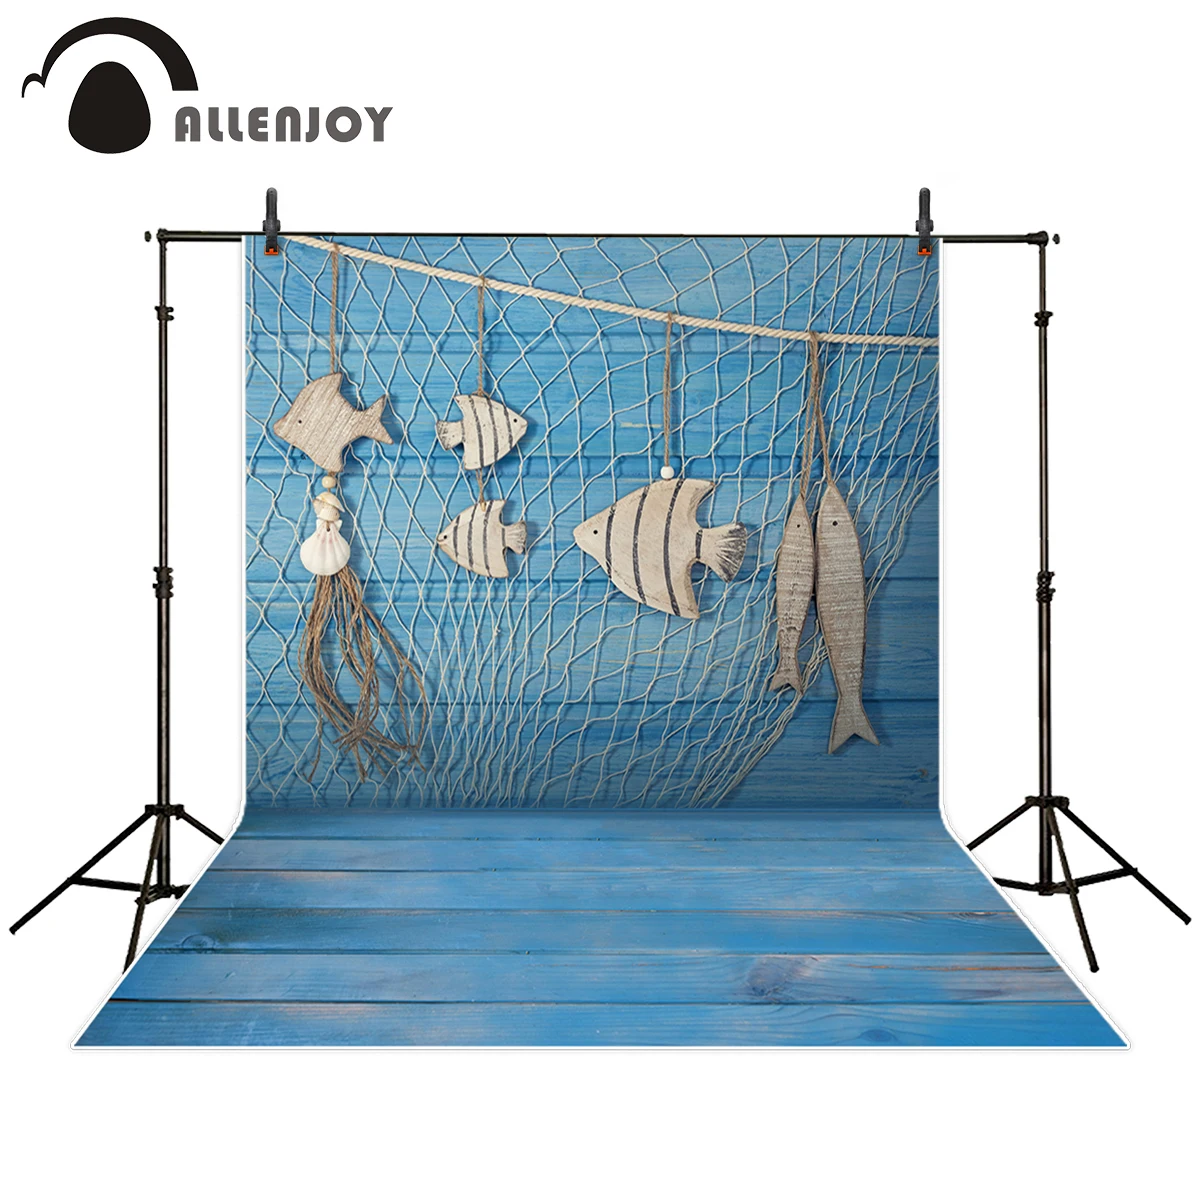 Allenjoy okolij za fotografiranje studiu blue woodboard otroka, novorojenčka lepe ribe rojstni dan ozadje prvotni načrt photocall